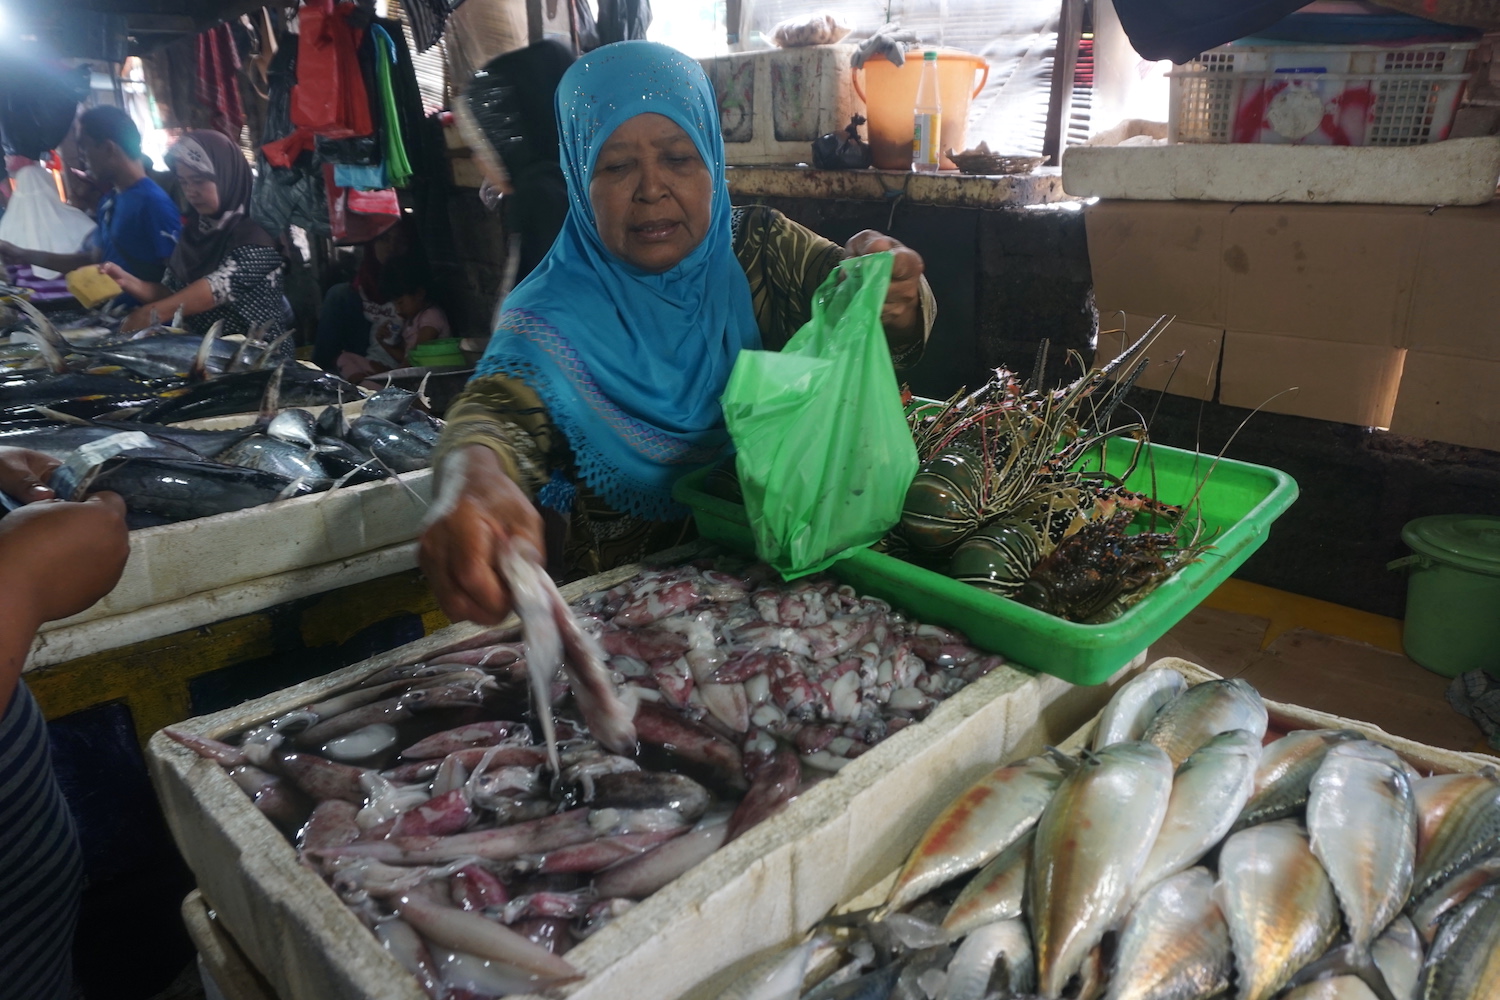 Pasar ikan kedonganan beri pengalaman beli ikan lalu bakar di jasa pemanggangan sekitarnya. Foto: Luh De Suriyani/Mongabay Indonesia